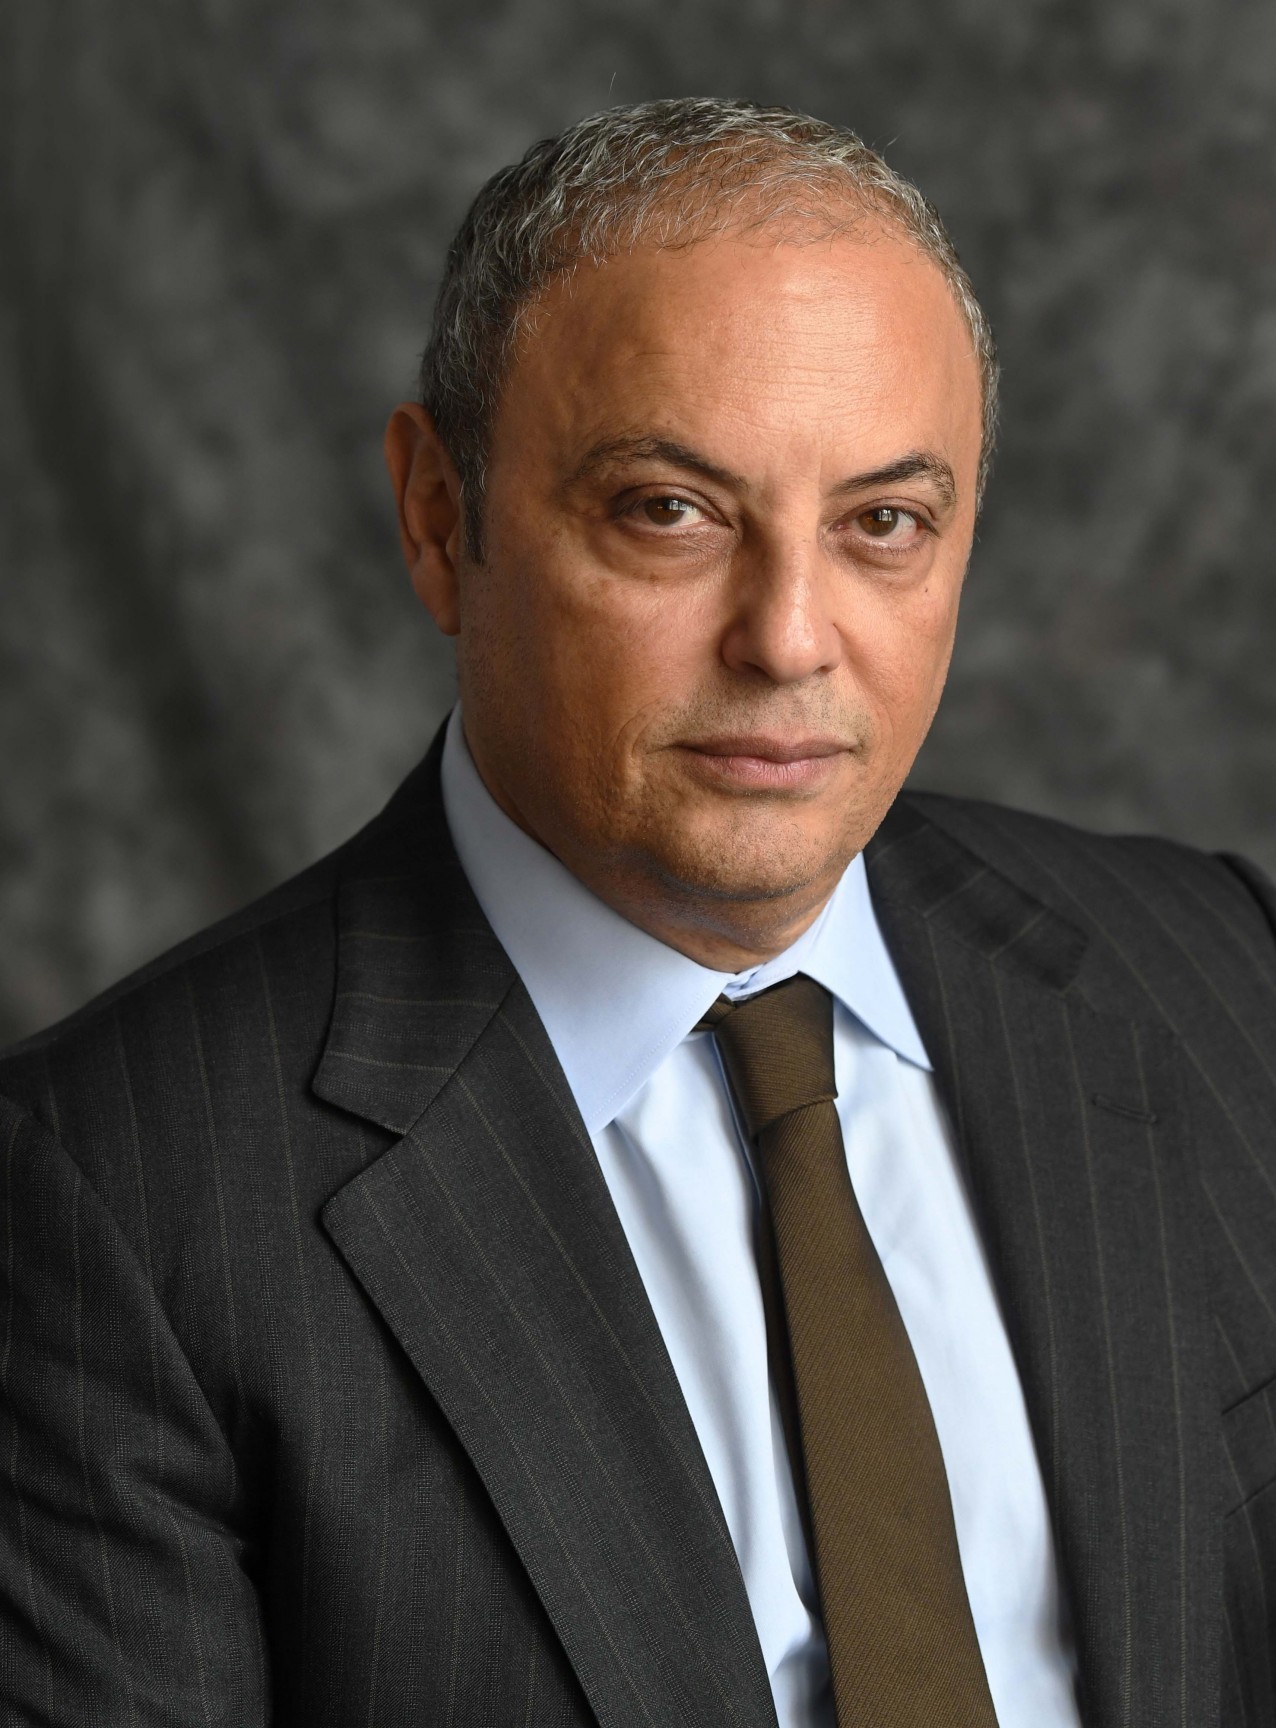 Safwan Masri